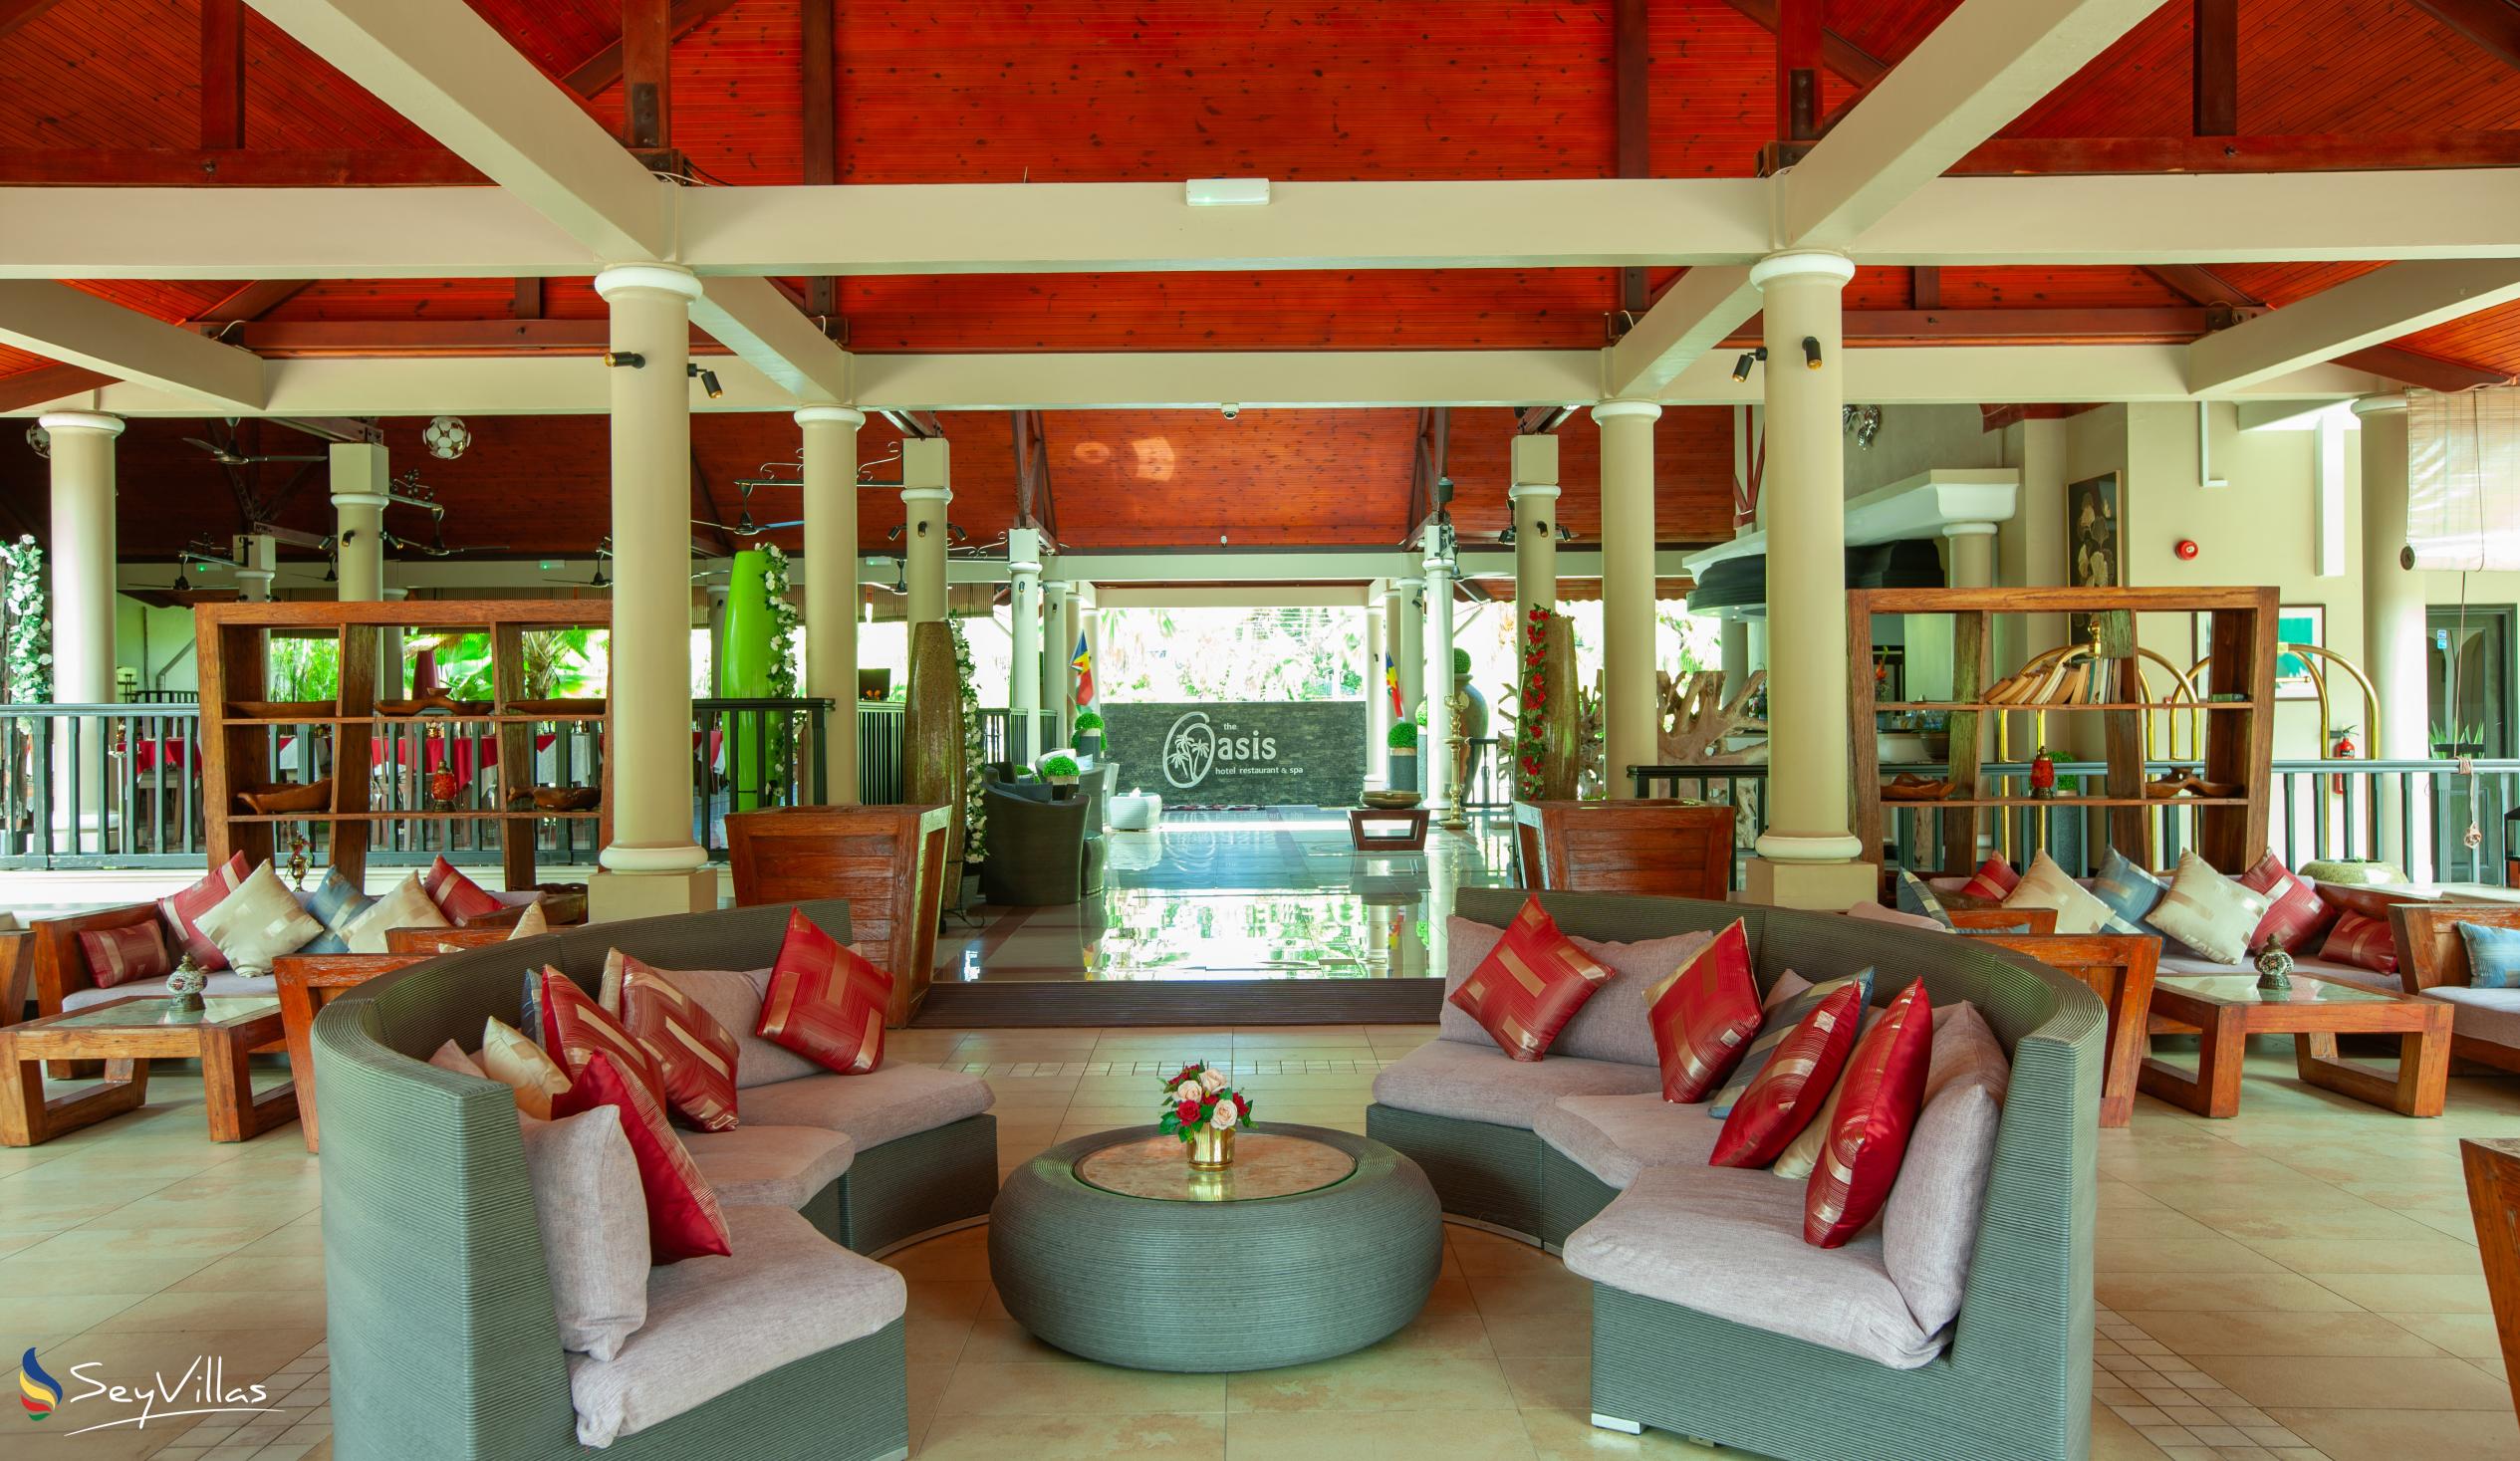 Foto 17: Oasis Hotel, Restaurant & Spa - Innenbereich - Praslin (Seychellen)